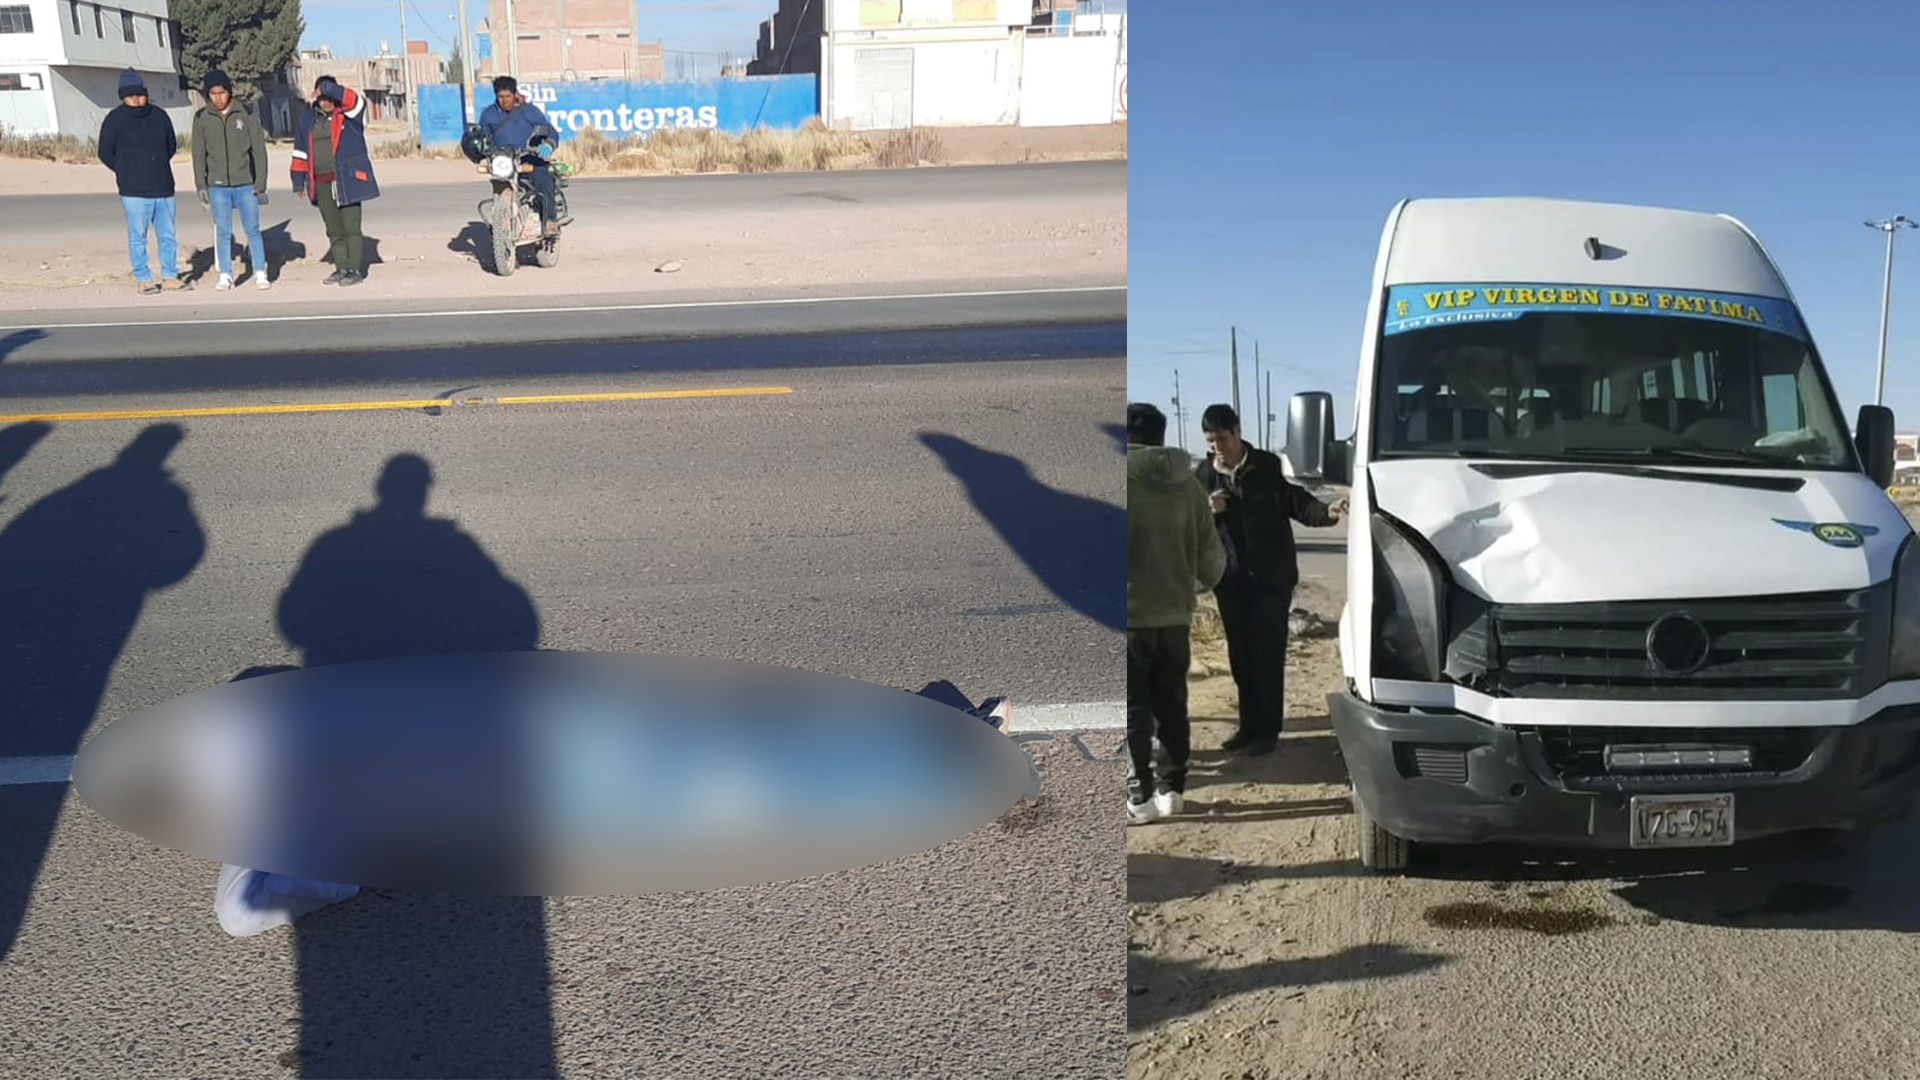 Minivan de la empresa Fátima atropelló a un joven, luego pretendió darse a la fuga